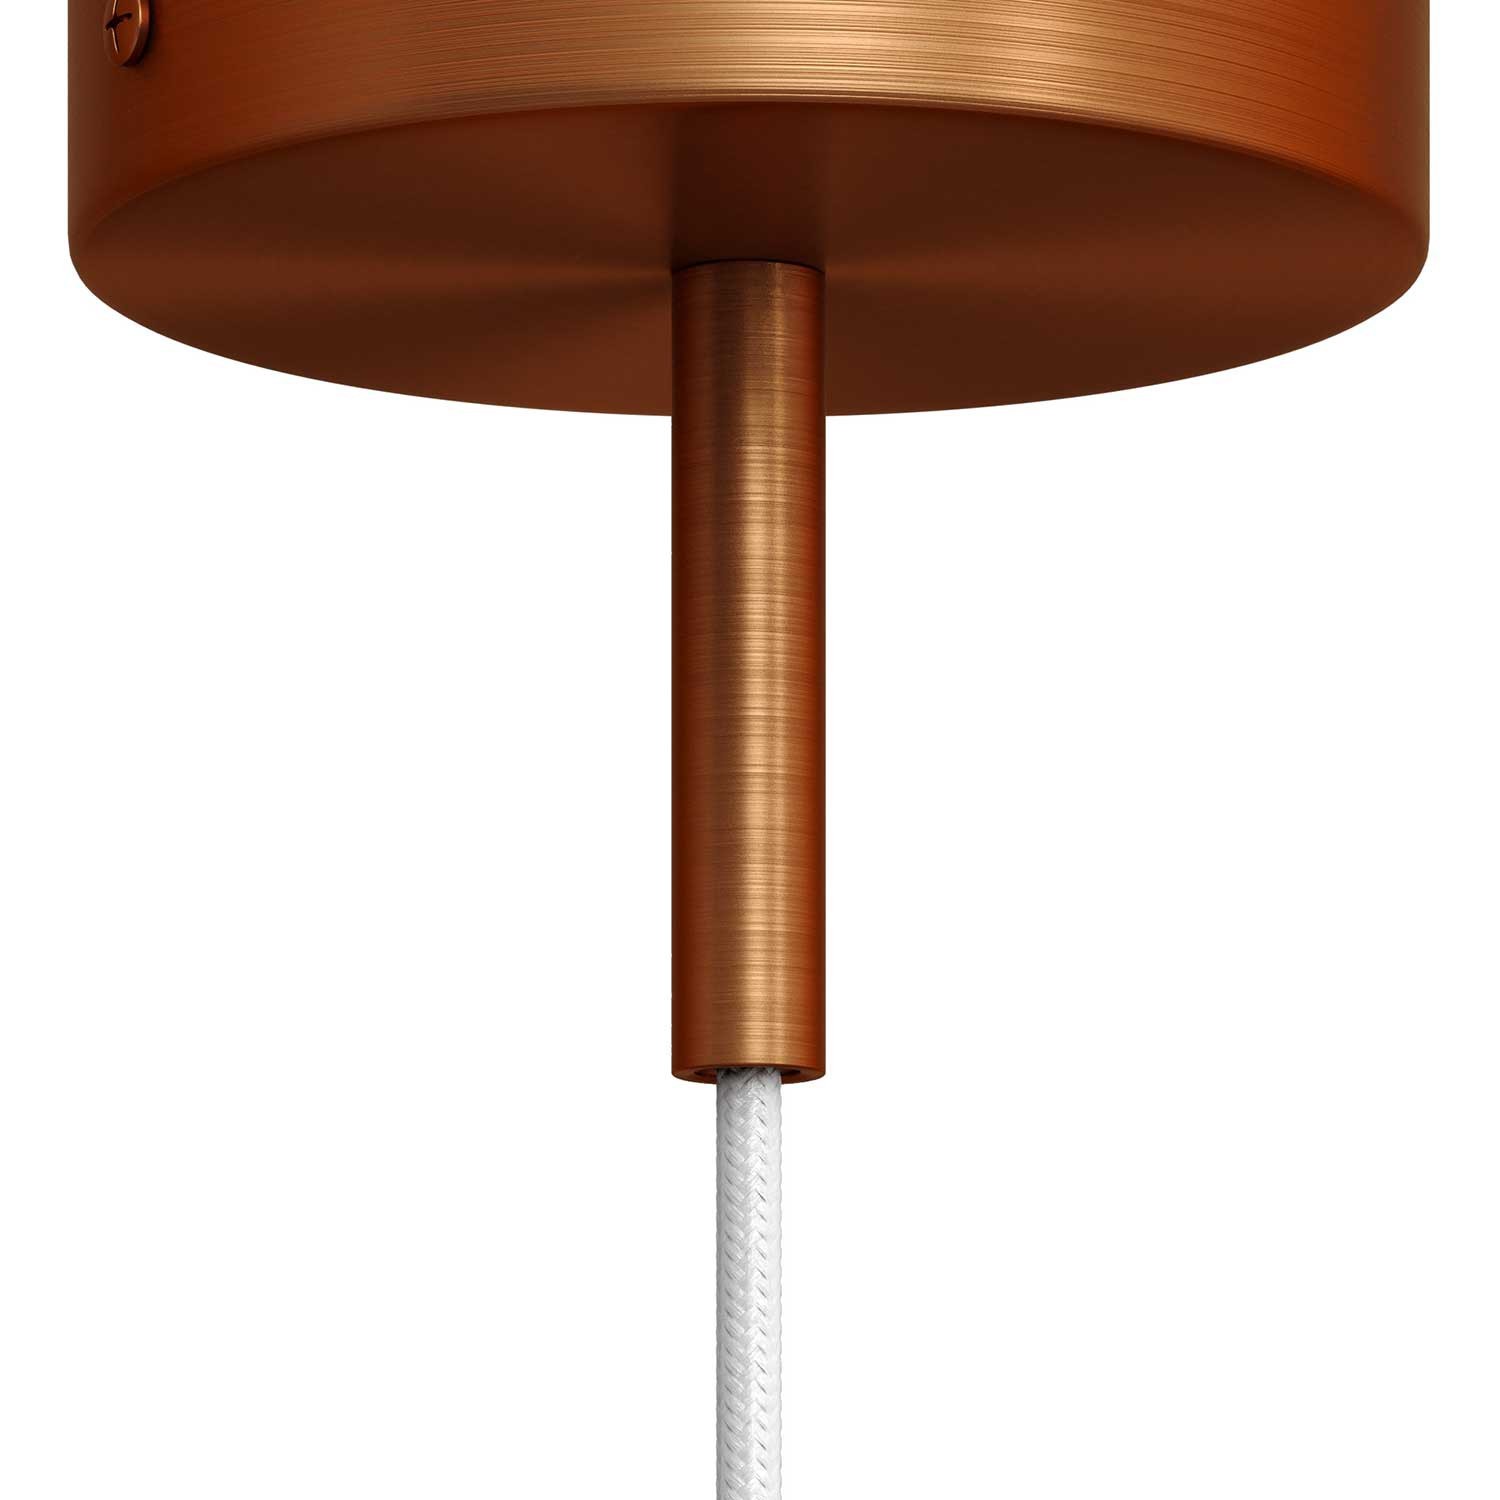 Cylindrisk kabelklemme af metal, længde 7 cm, komplet med stang, møtrik og skive